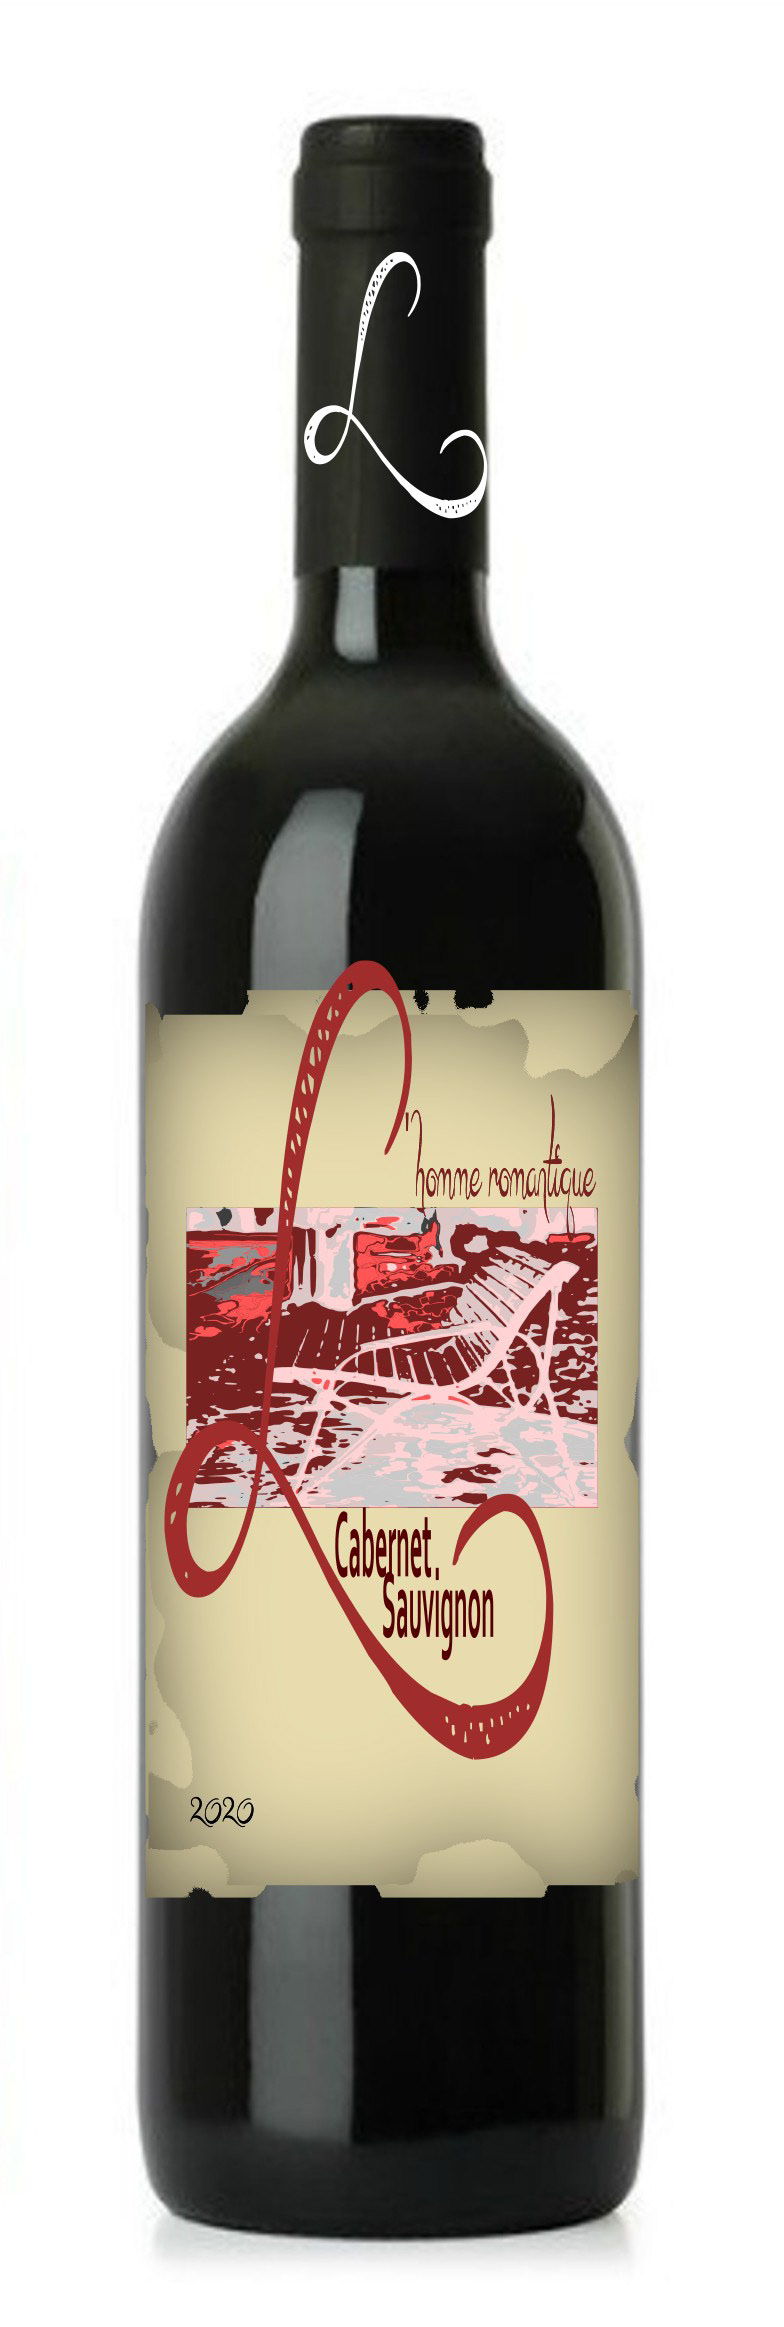 cabernet sauvignon wine label